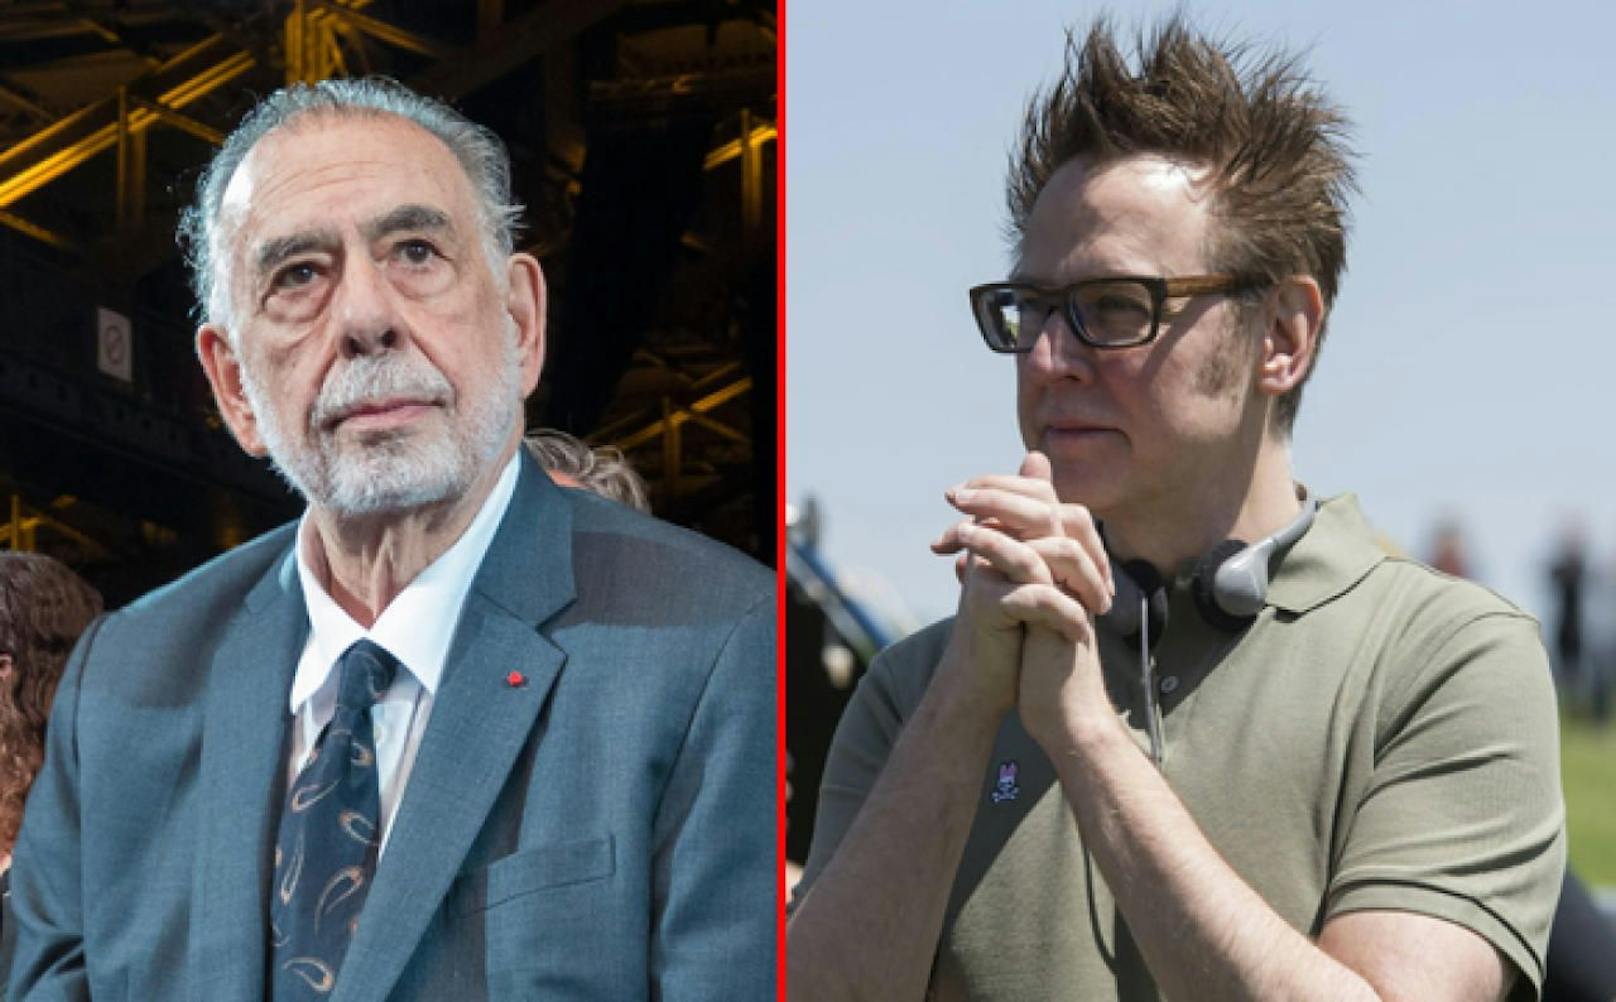 Coppola verteufelt Comic Movies, Gunn verteidigt sie